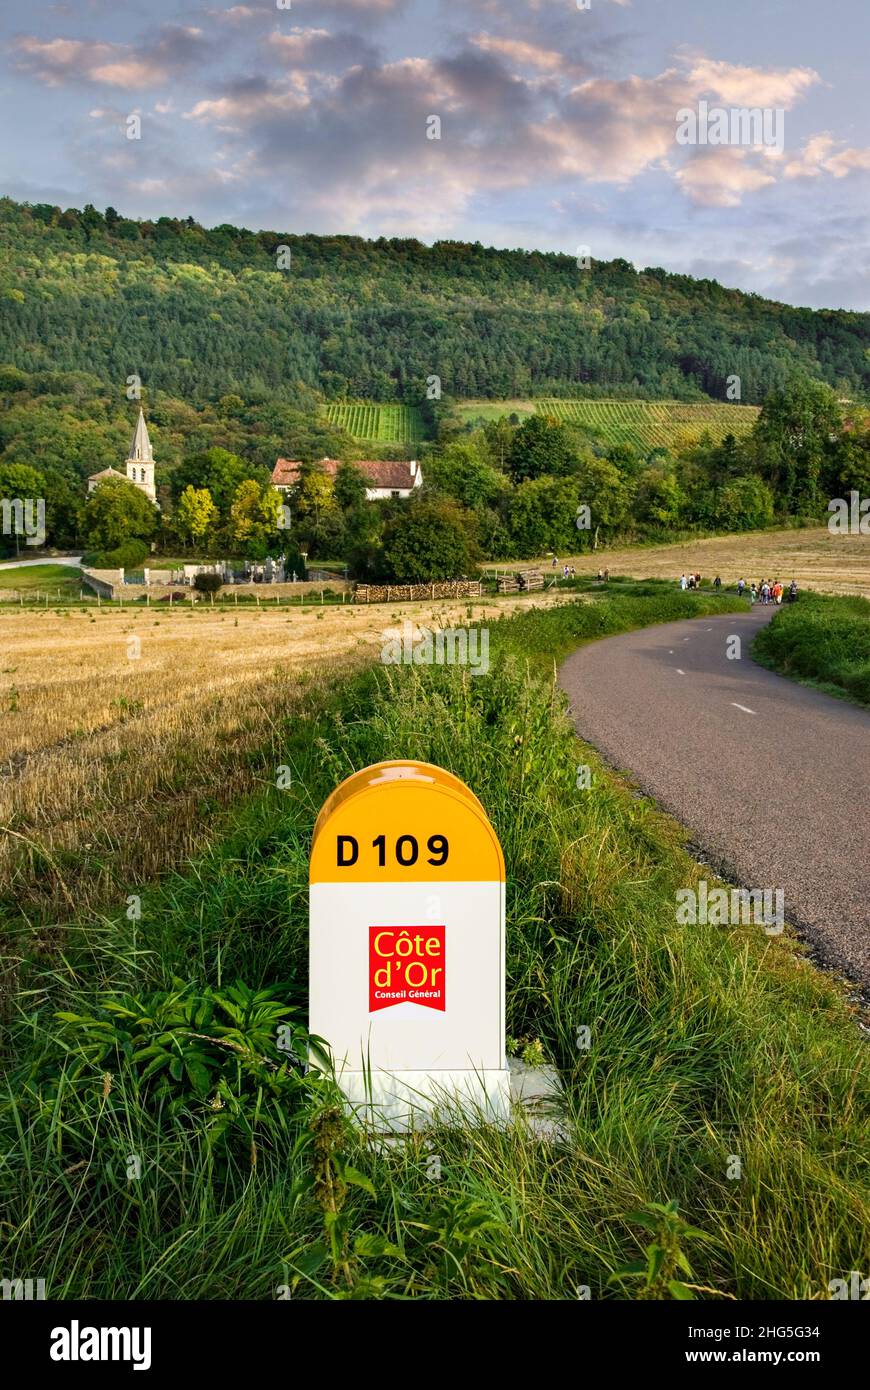 Hautes Cotes de Nuits carretera rural señal D109 poste marcador, piedra de carretera y Curtil-Vergy pueblo detrás con caminantes, Cote d'Or, Borgoña Francia Foto de stock